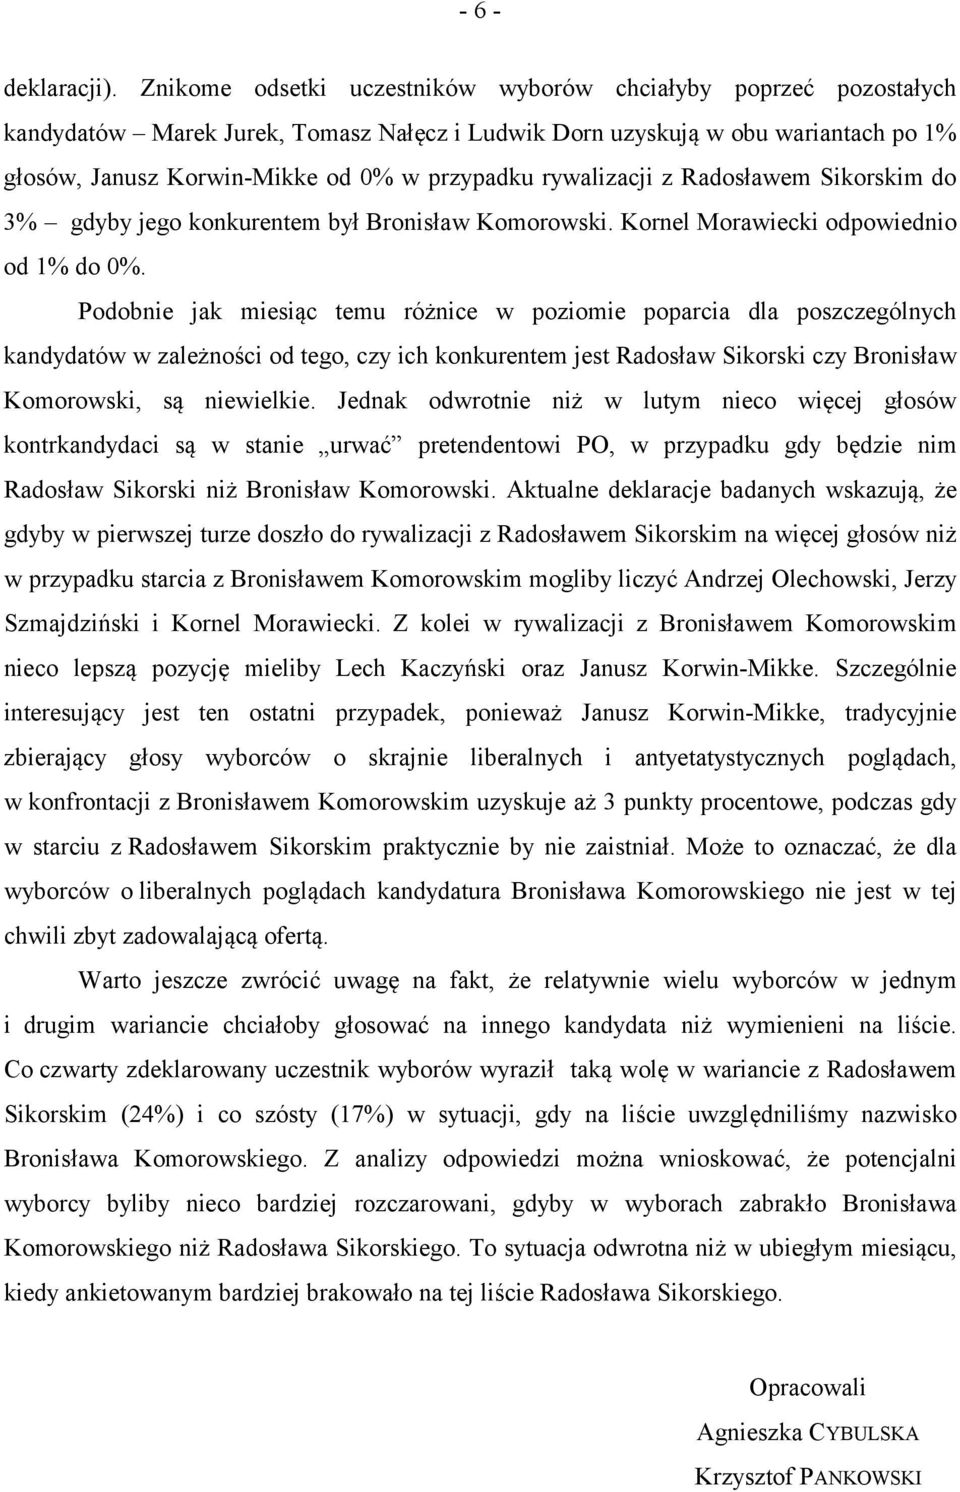 rywalizacji z Radosławem Sikorskim do 3% gdyby jego konkurentem był Bronisław Komorowski. Kornel Morawiecki odpowiednio od do 0%.